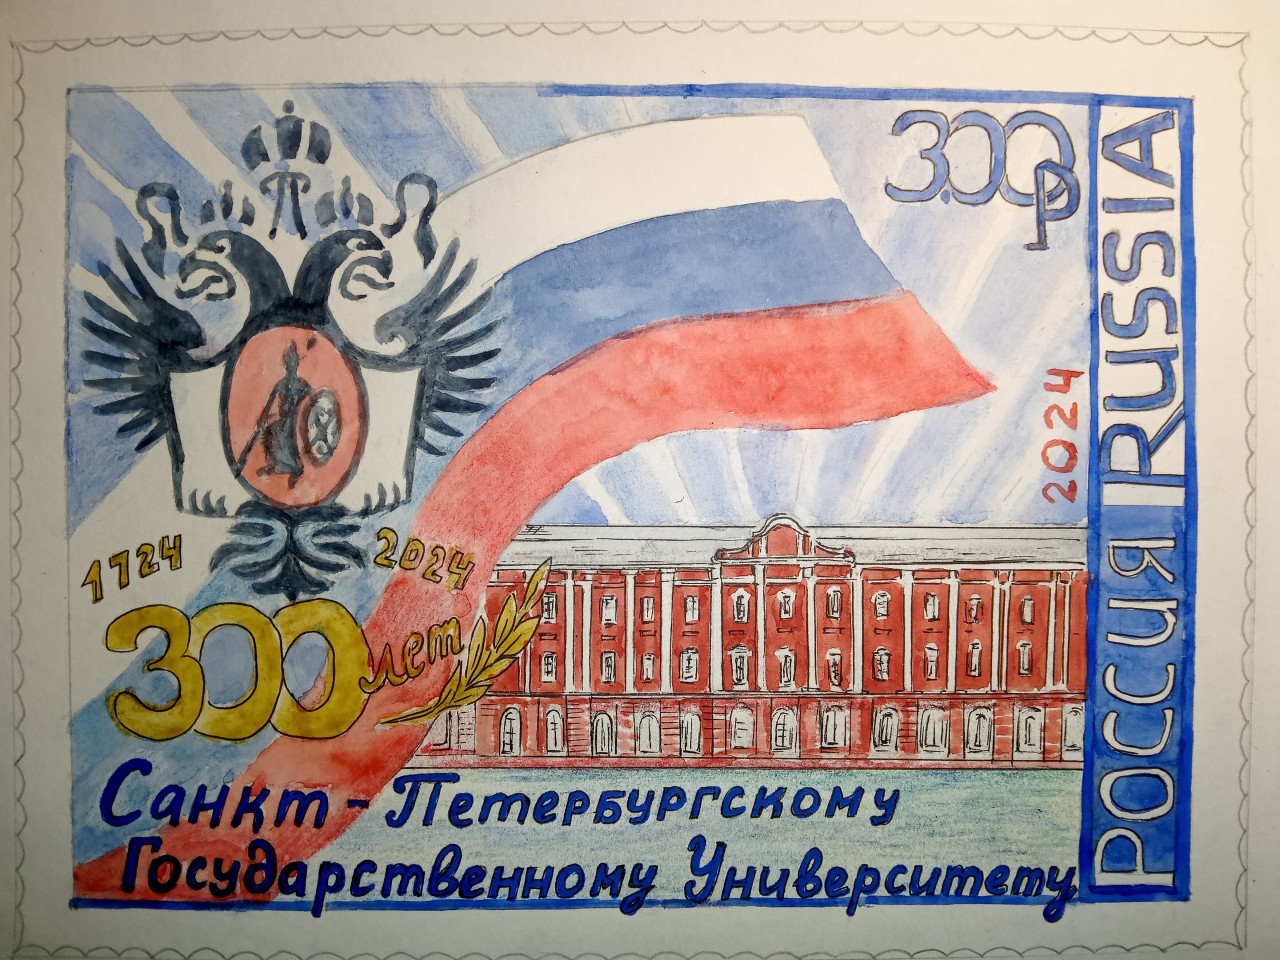 Юбилейная почтовая марка "300 лет СПбГУ" Вариант 1